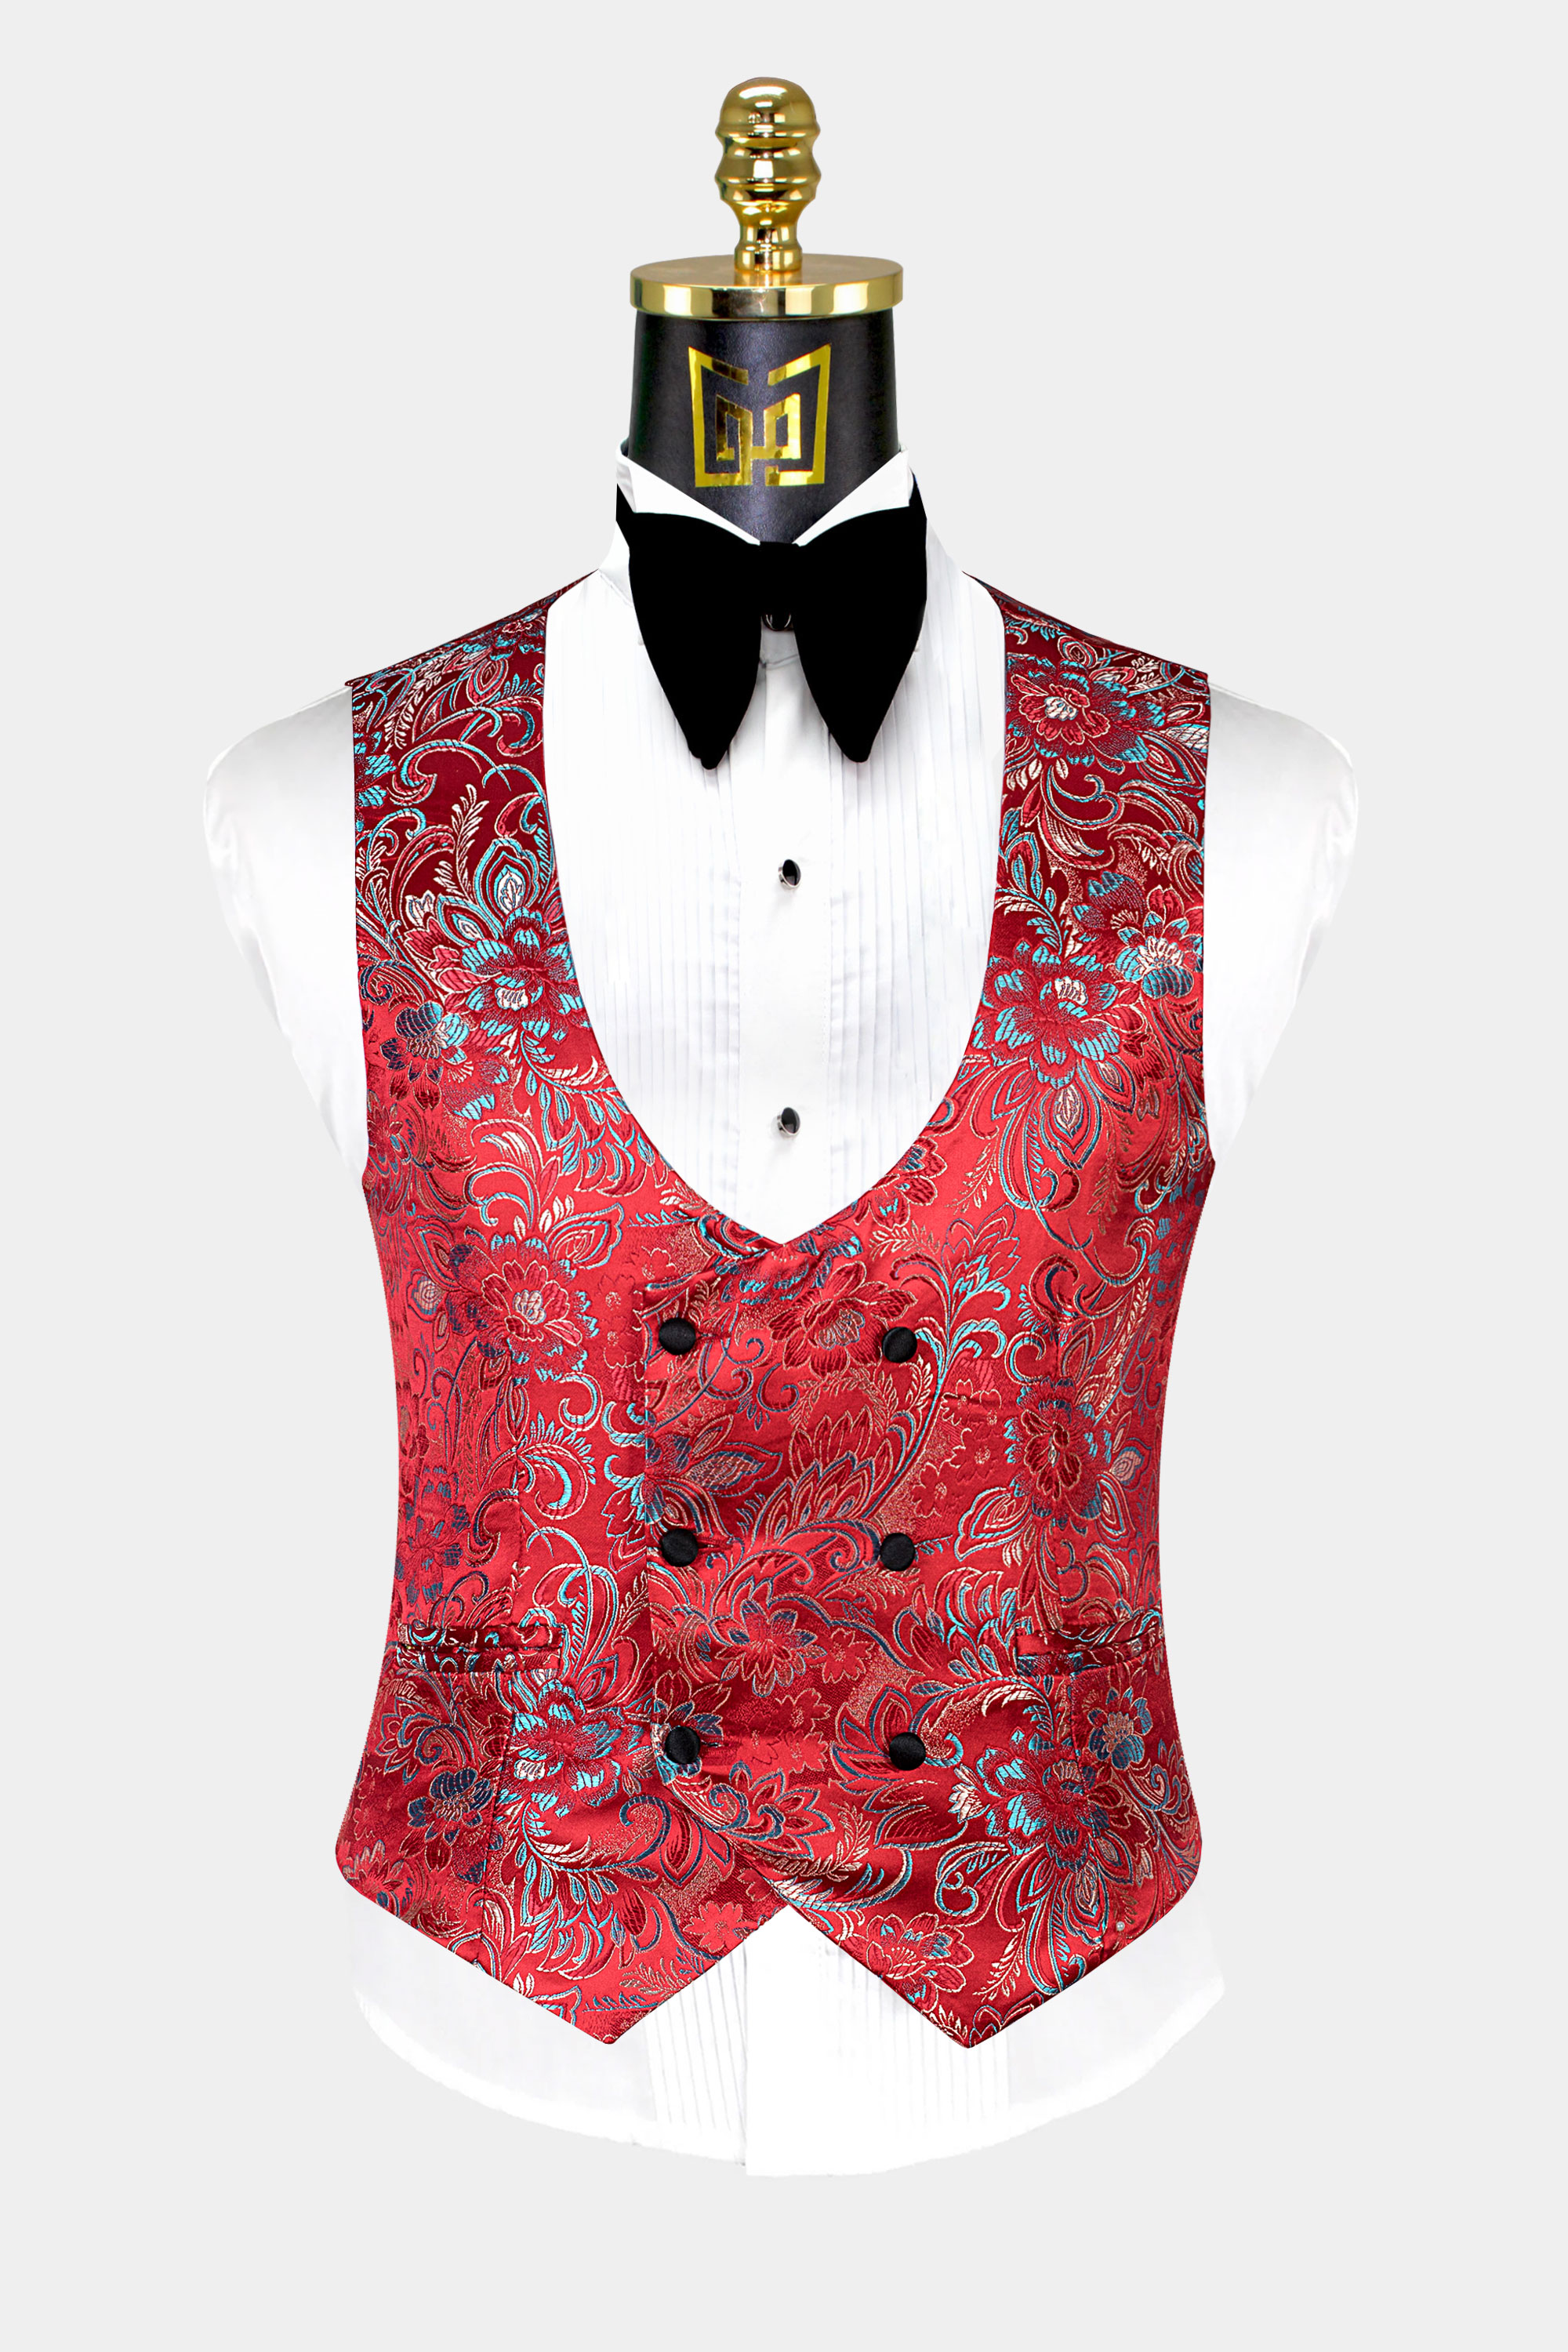 Red-Floral-Tuxedo-Vest-from-Gentlemansguru.com